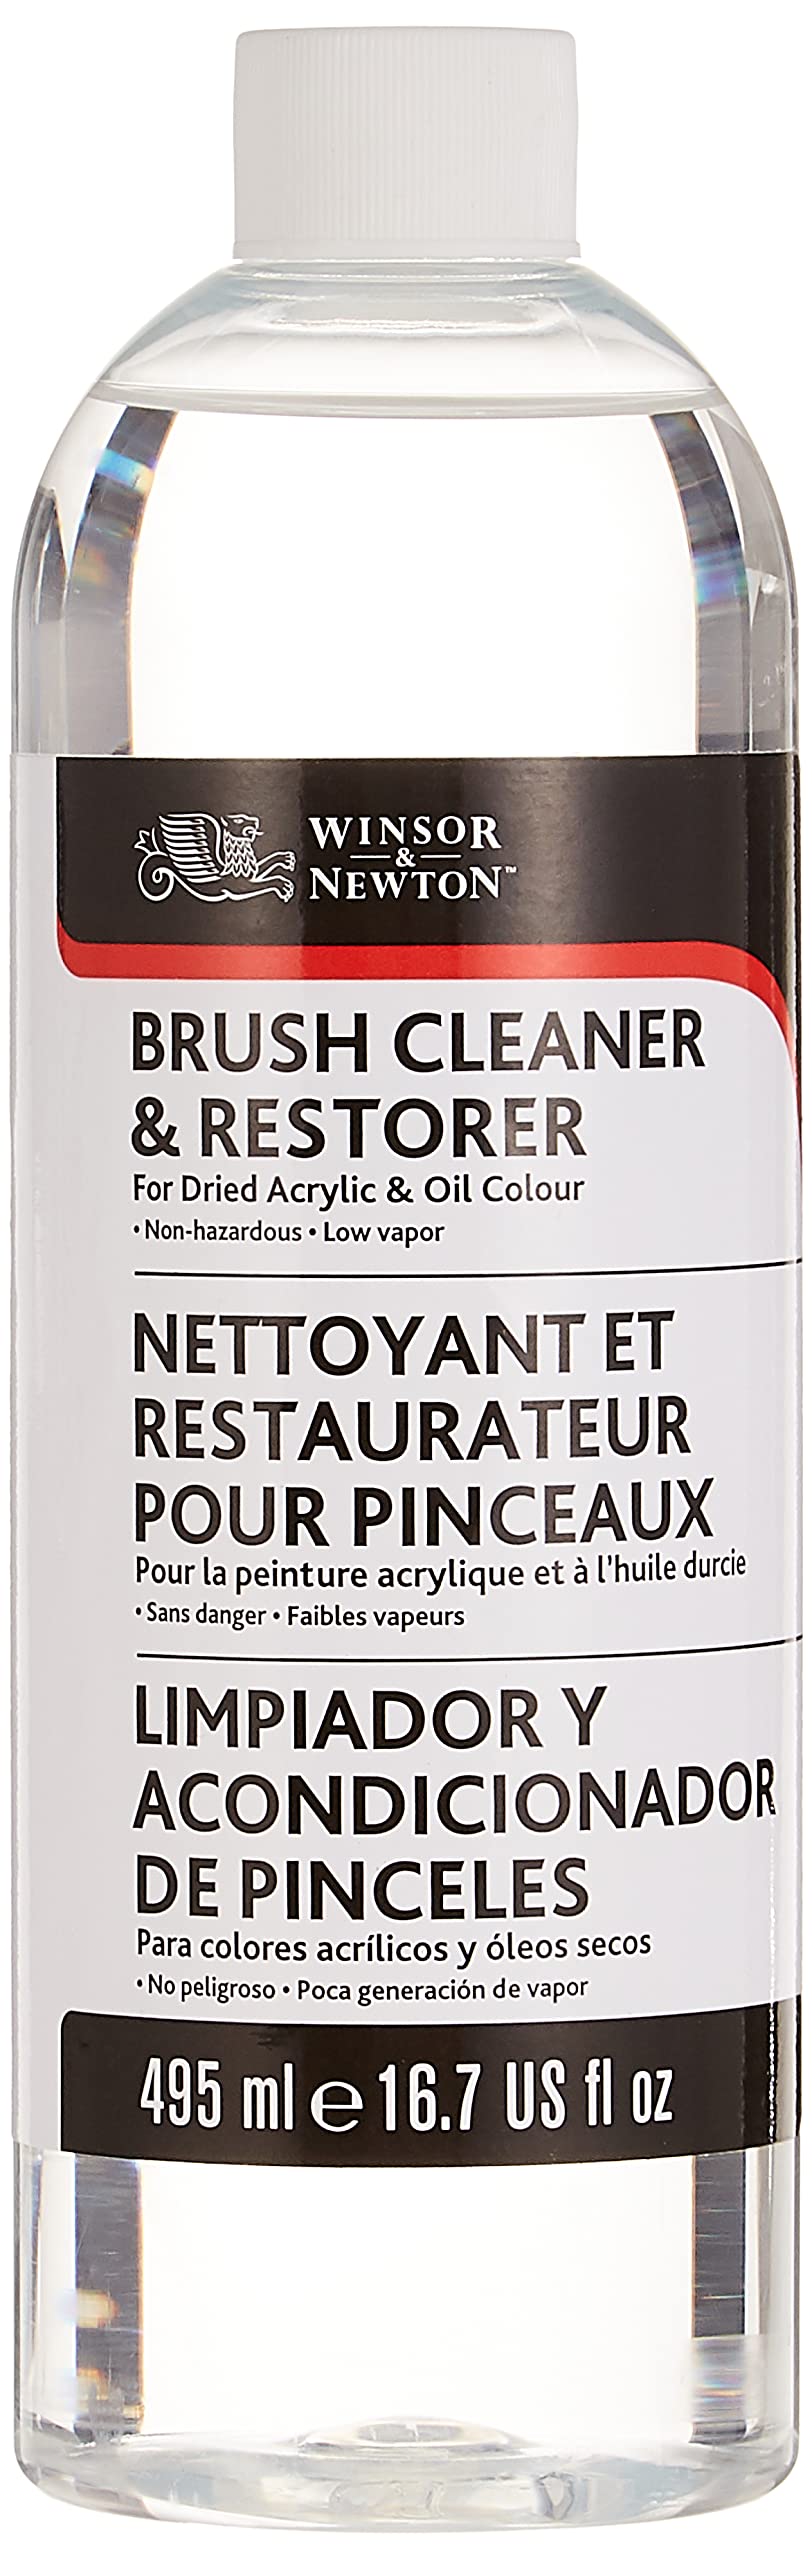 Winsor & Newton Brush Cleaner and Restorer